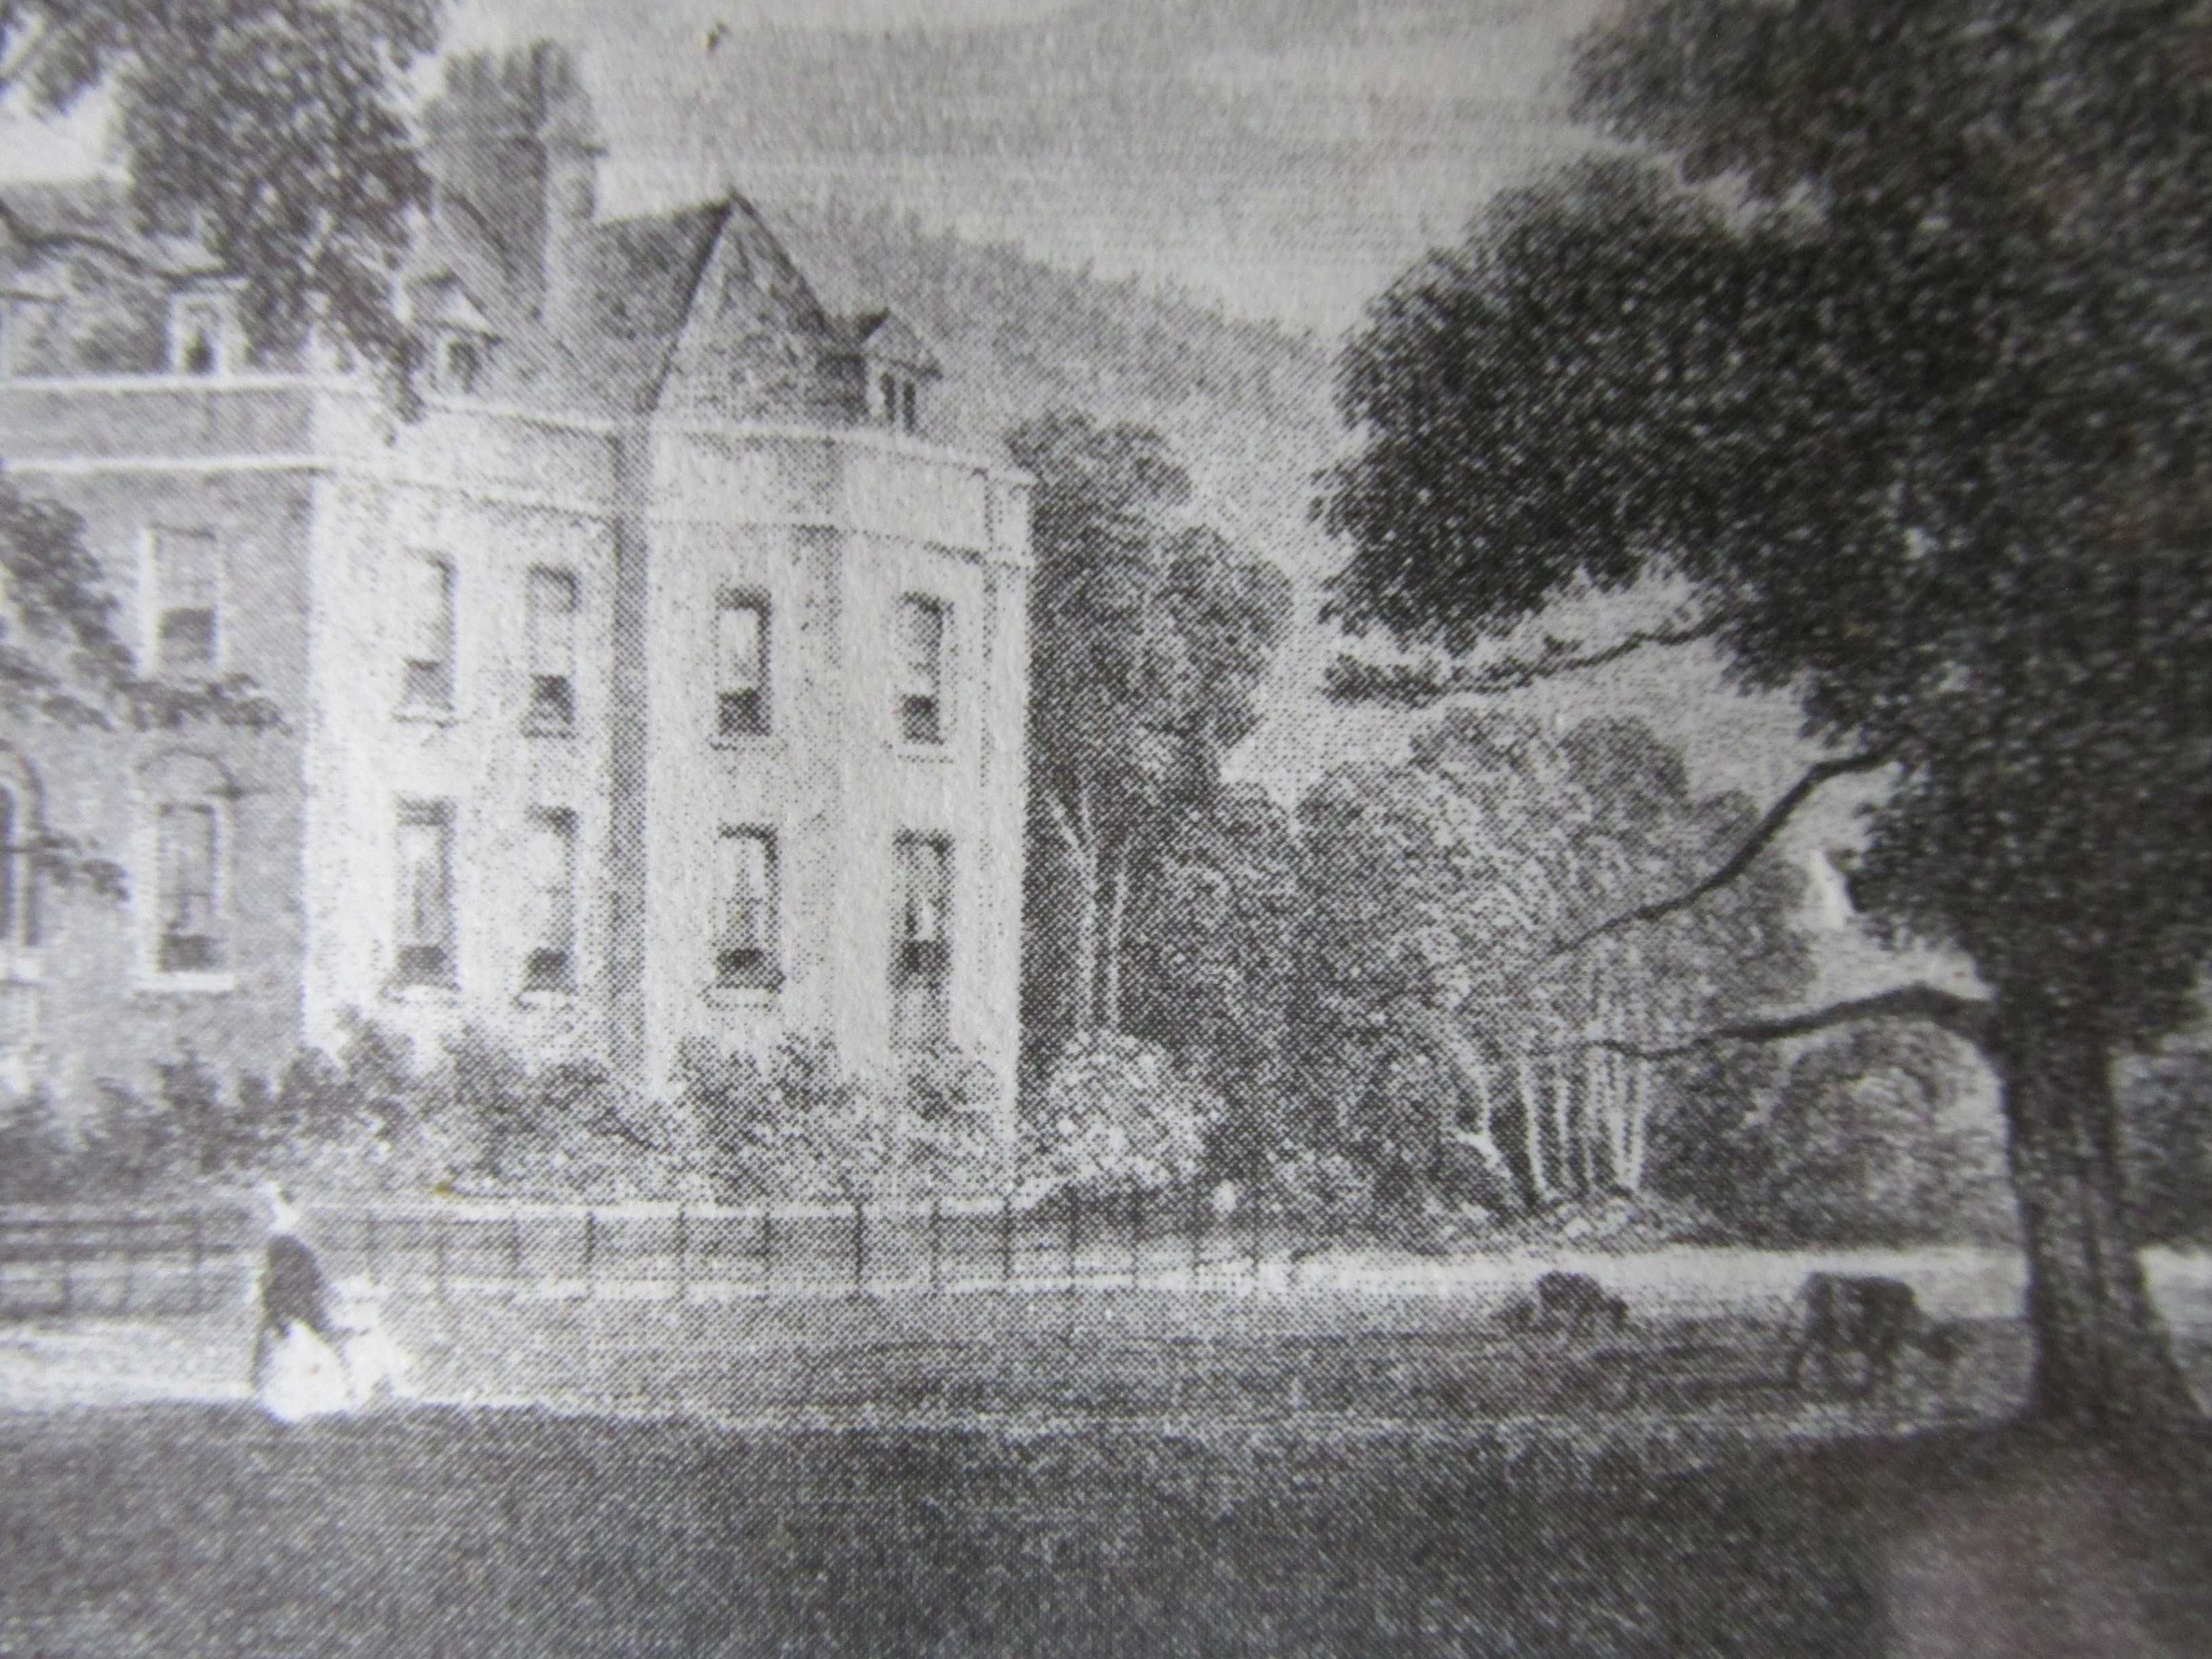 Stary Staloryt Czarn-Biały -Bradston Brook House Thalford- 1848 Anglia